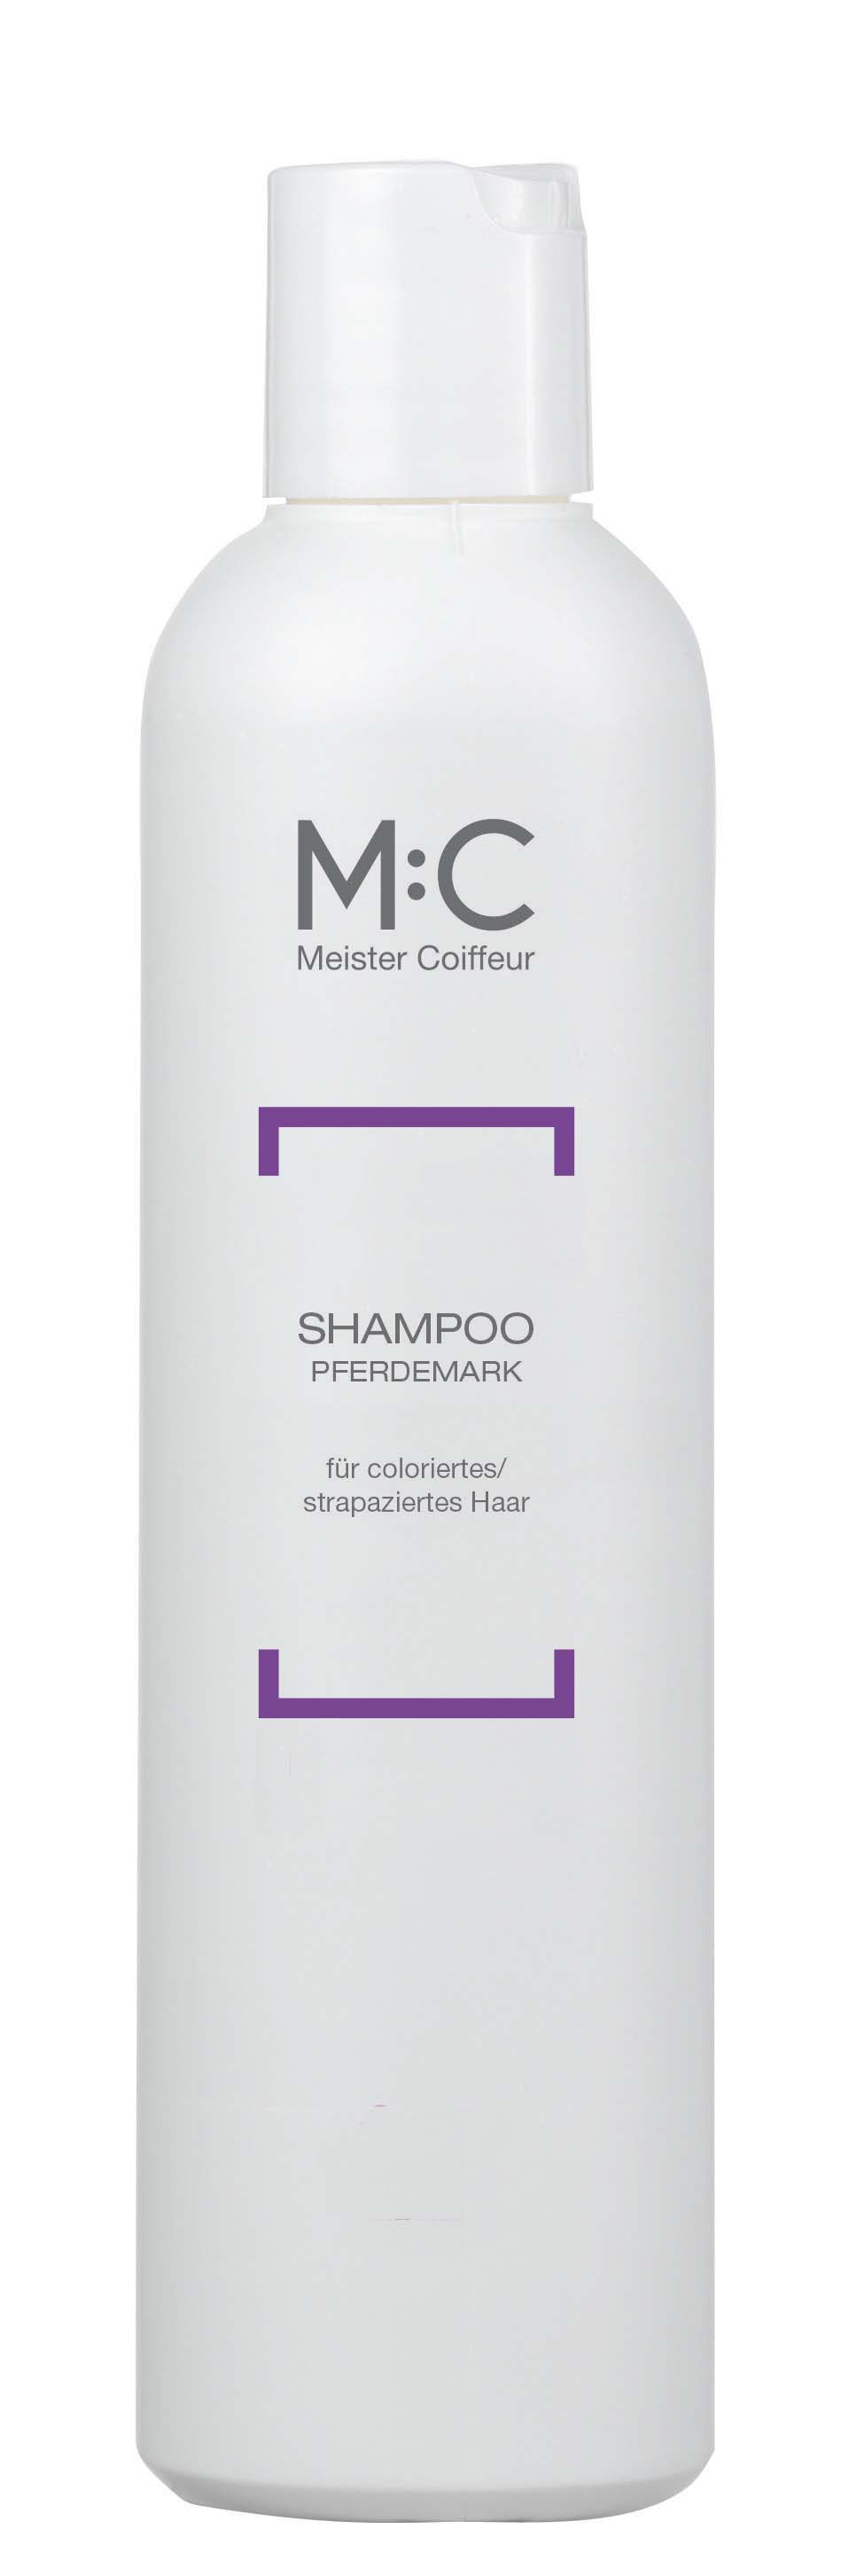 M:C Shampoo Horse marrow C 250 ml